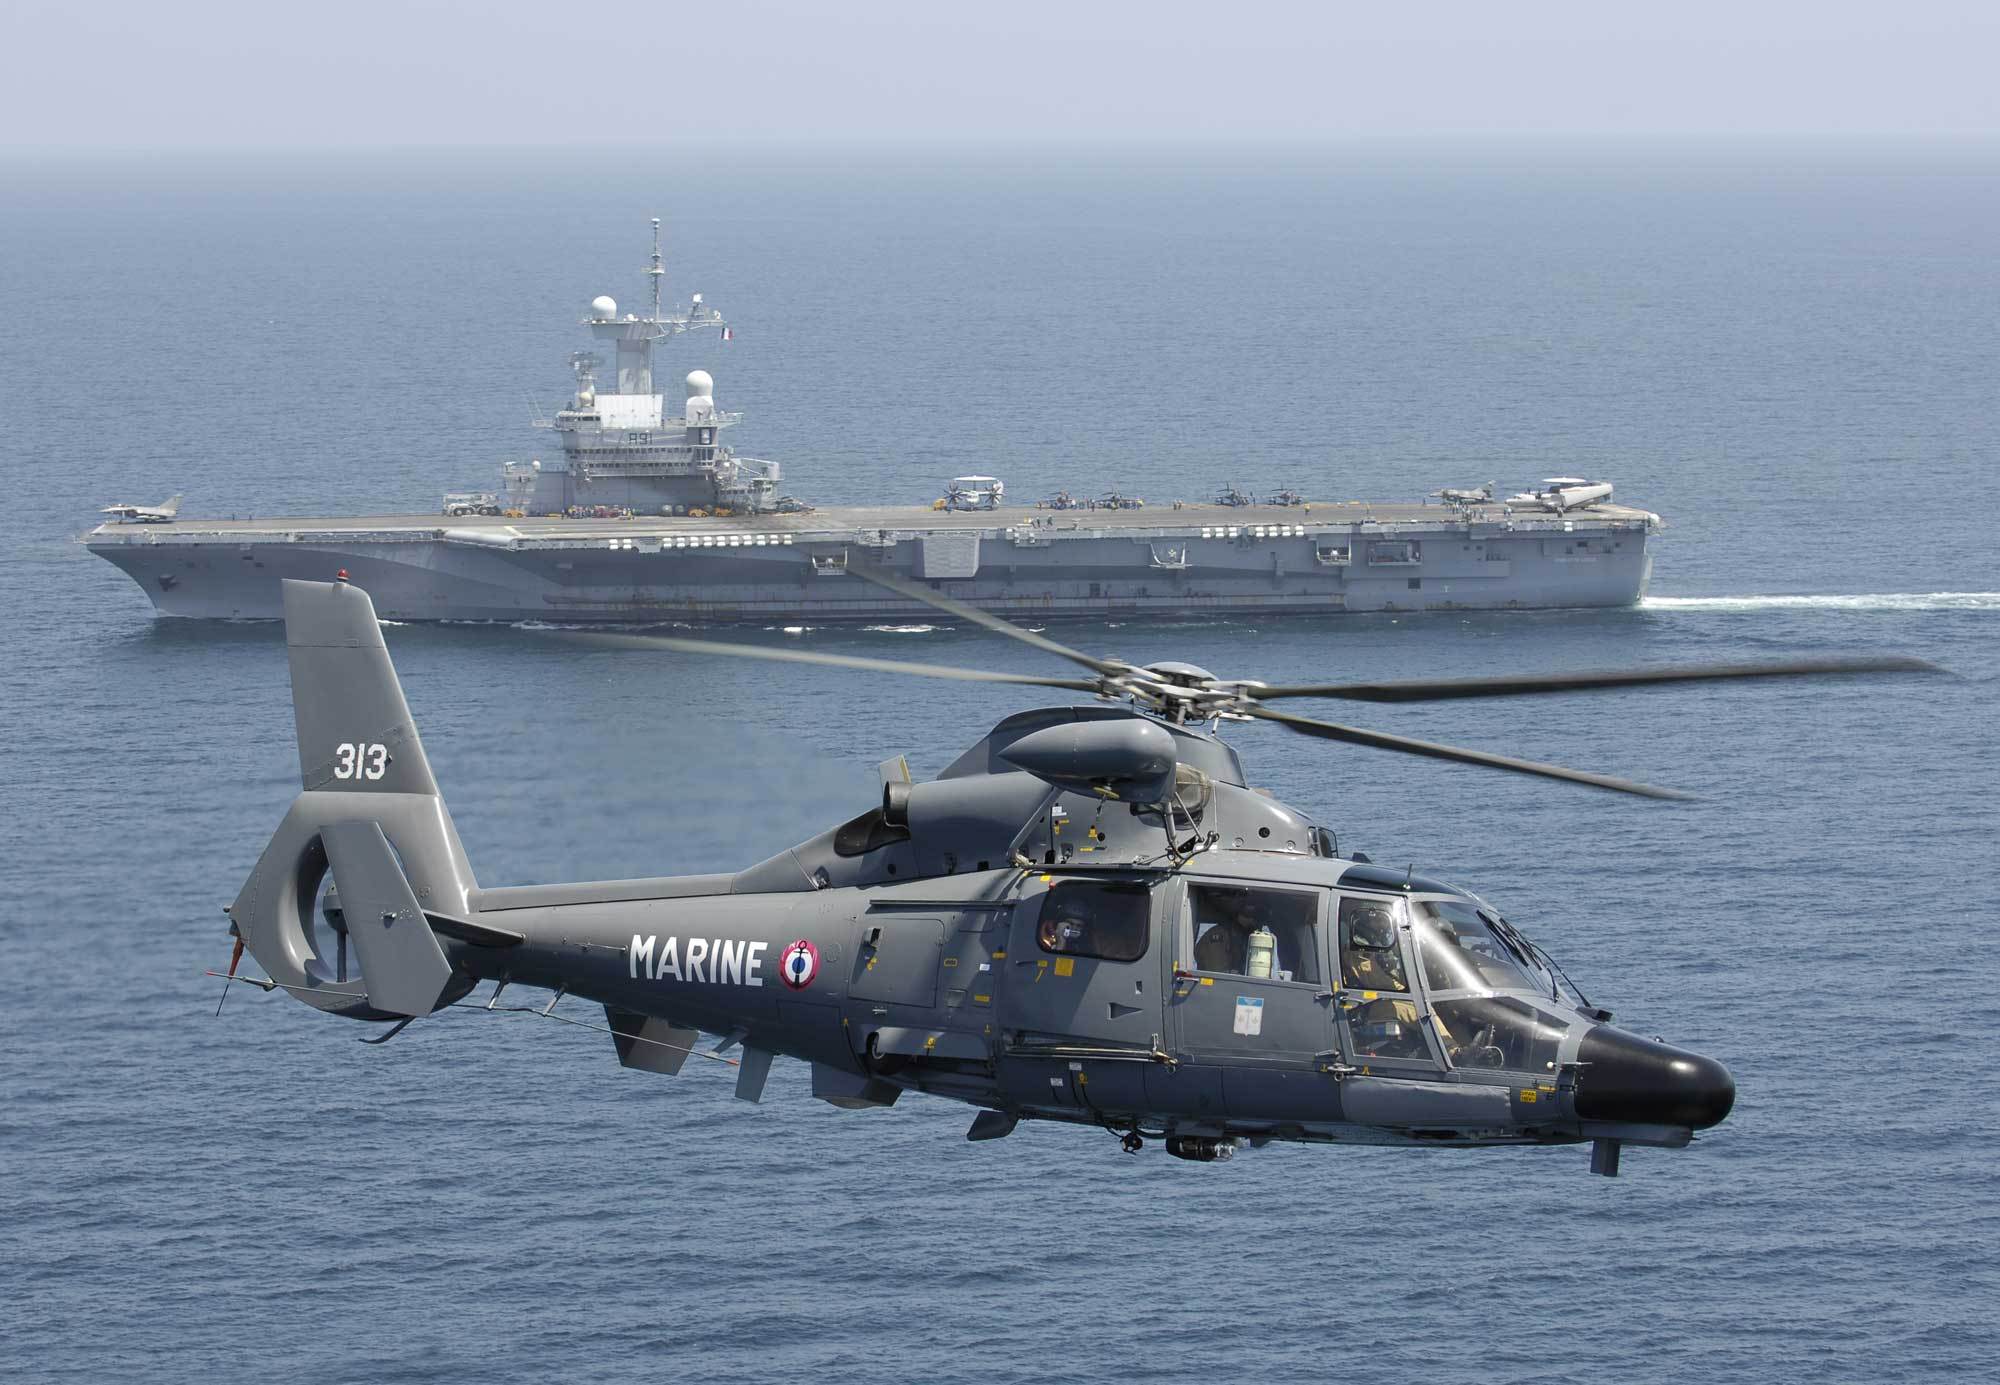 原创为省钱,法国海军提前退役42岁高龄舰载直升机,由nh90接棒